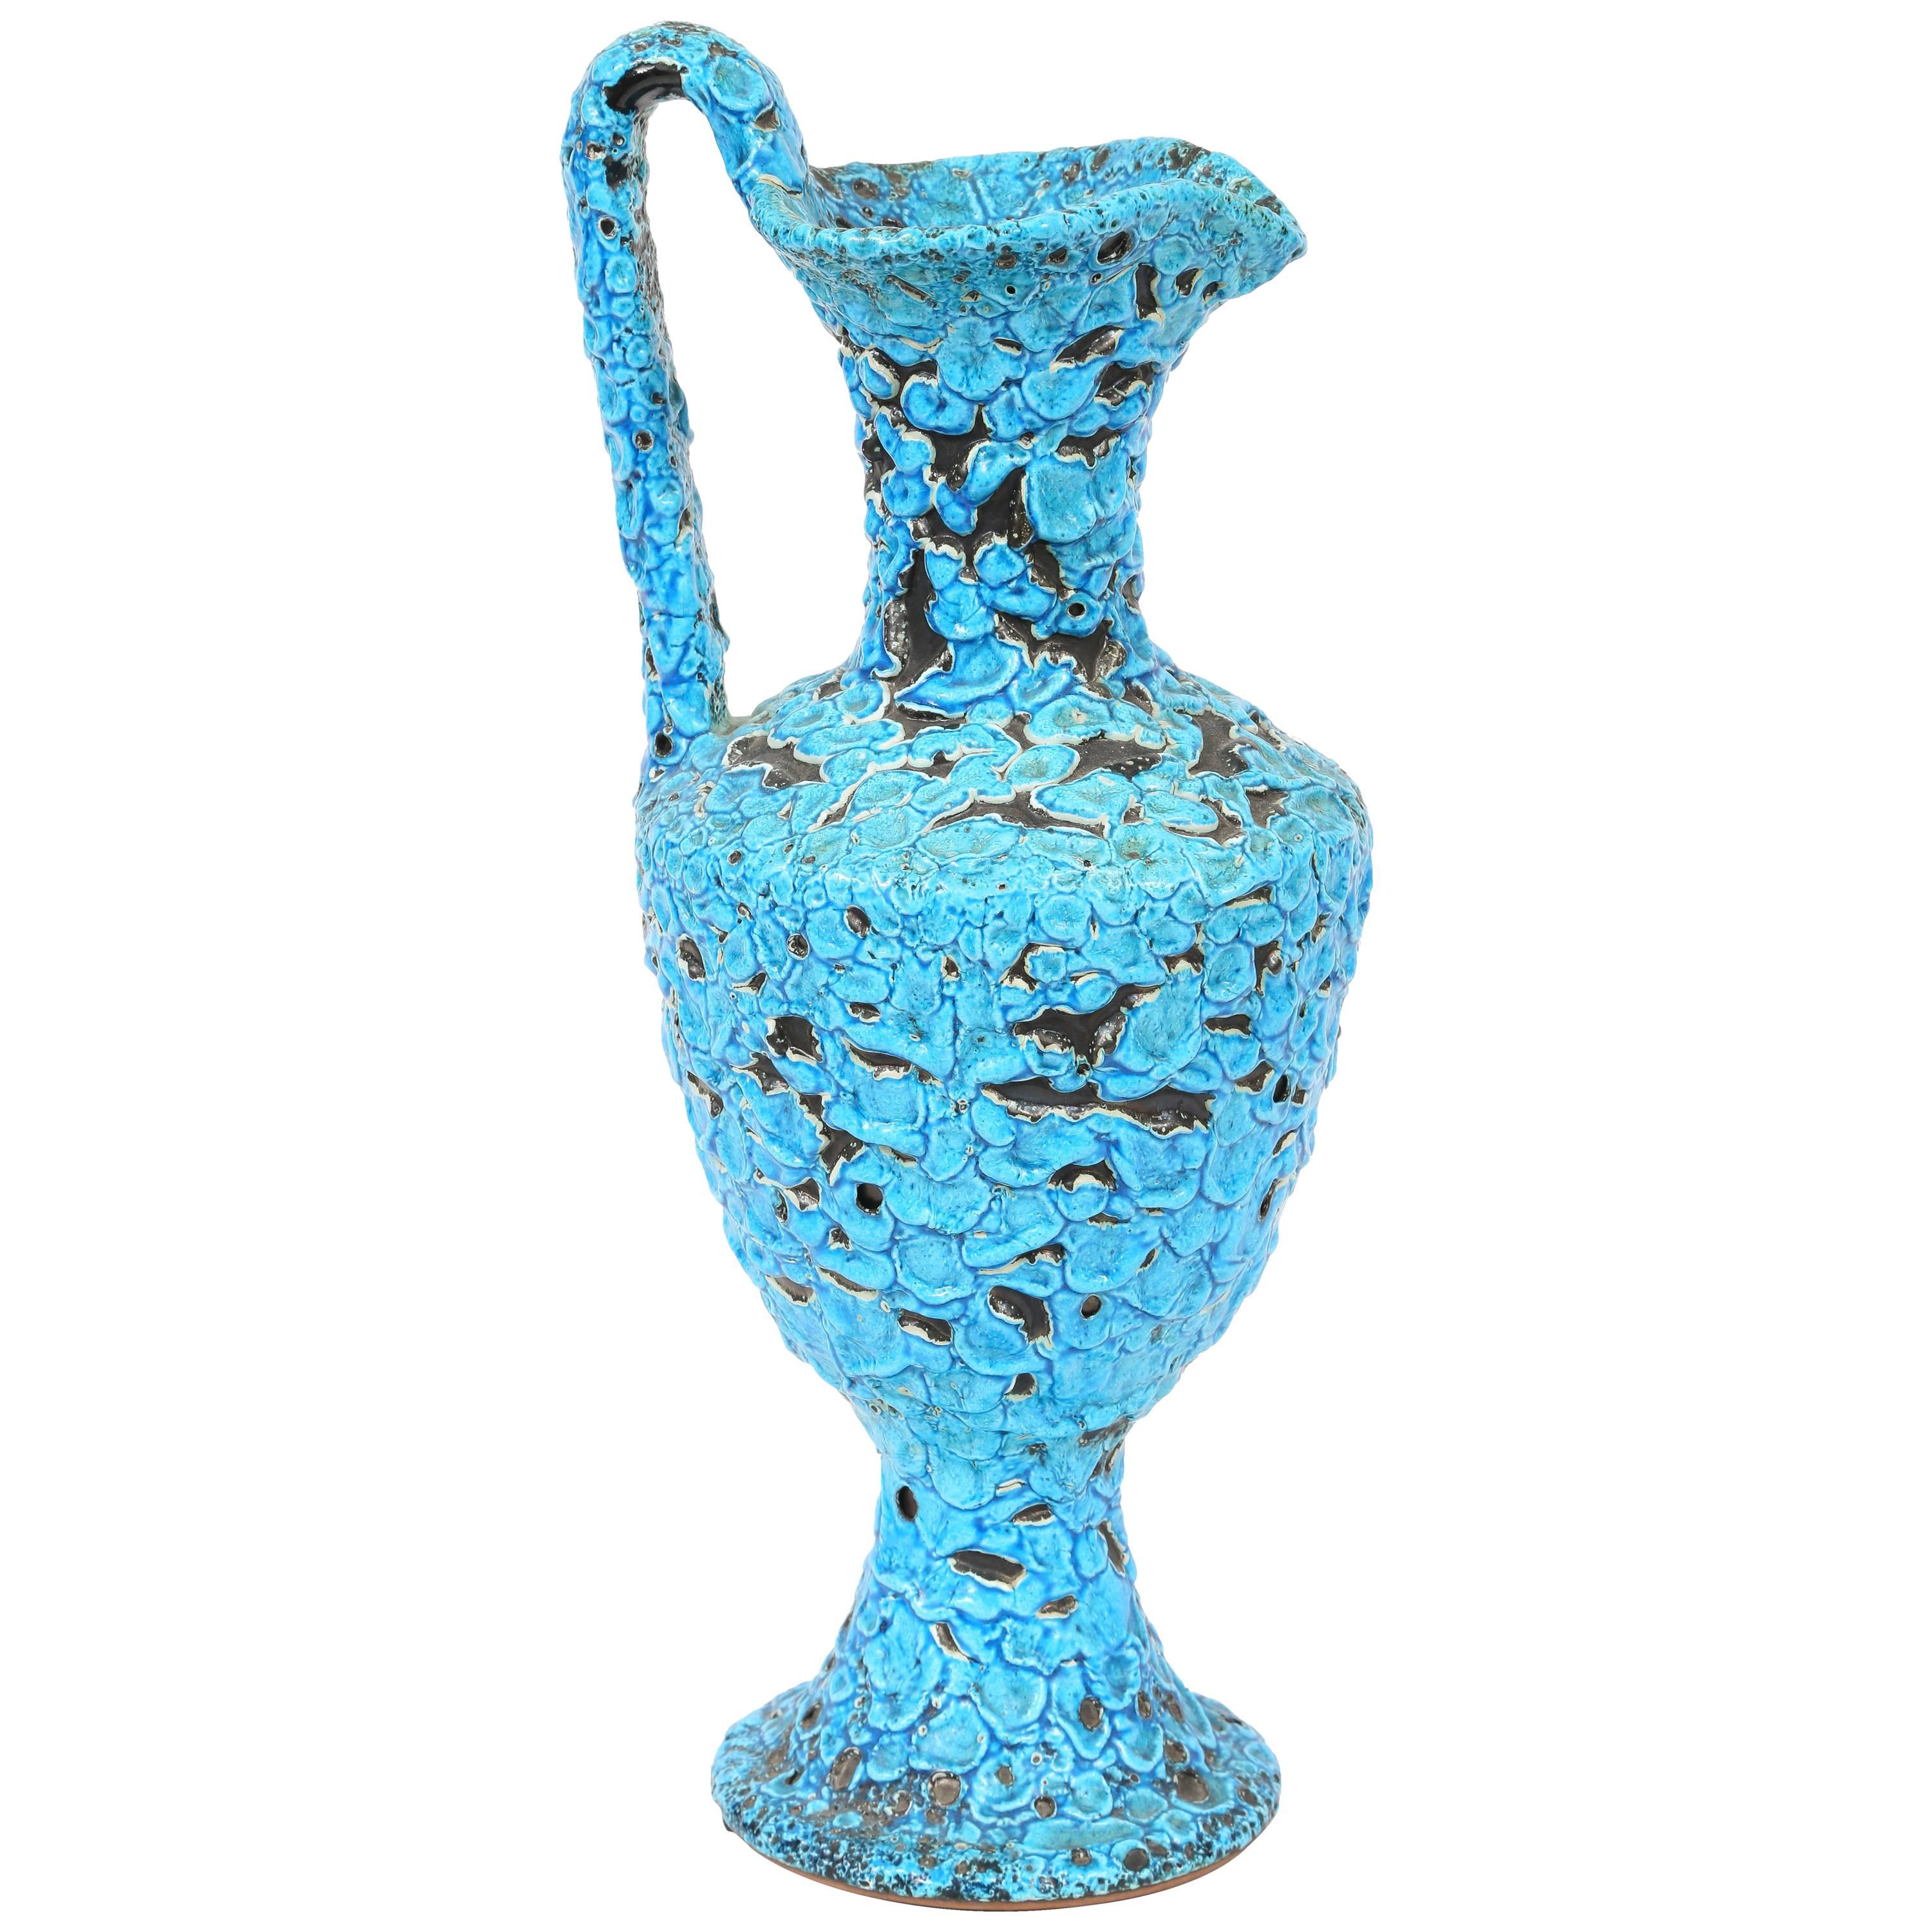 Vase aus lebhaftem blauen und türkisfarbenem Lava-Cyclope-Keramik, 1960er Jahre